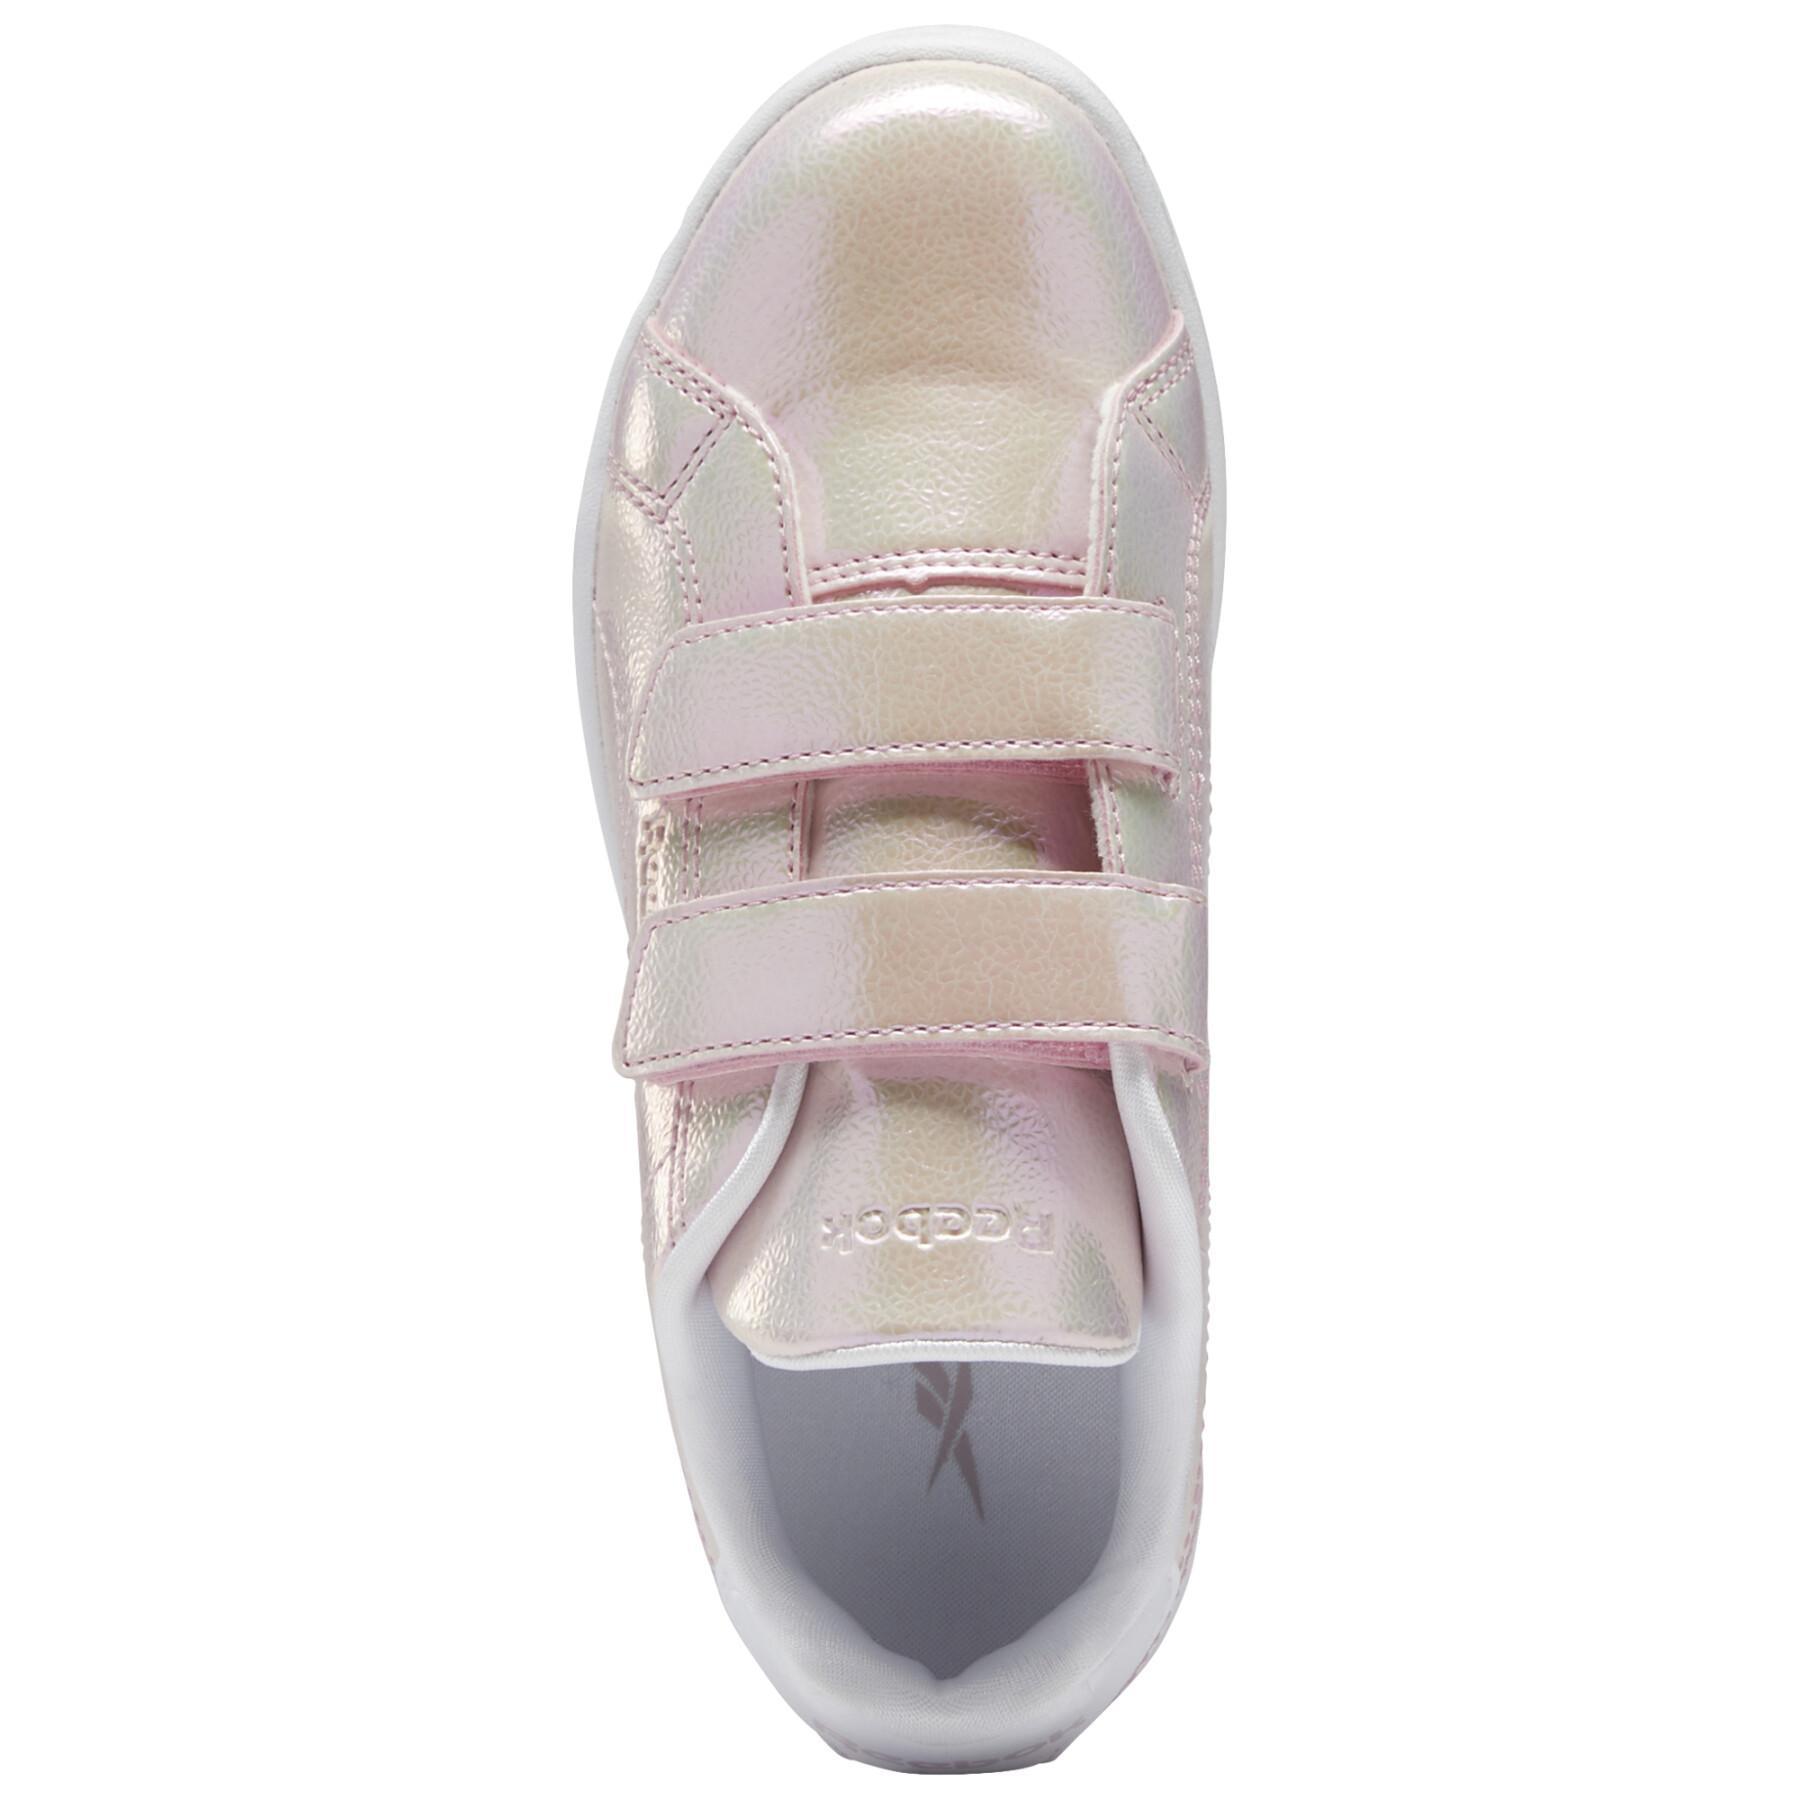 Schuhe für Mädchen Reebok Royal Complete 2